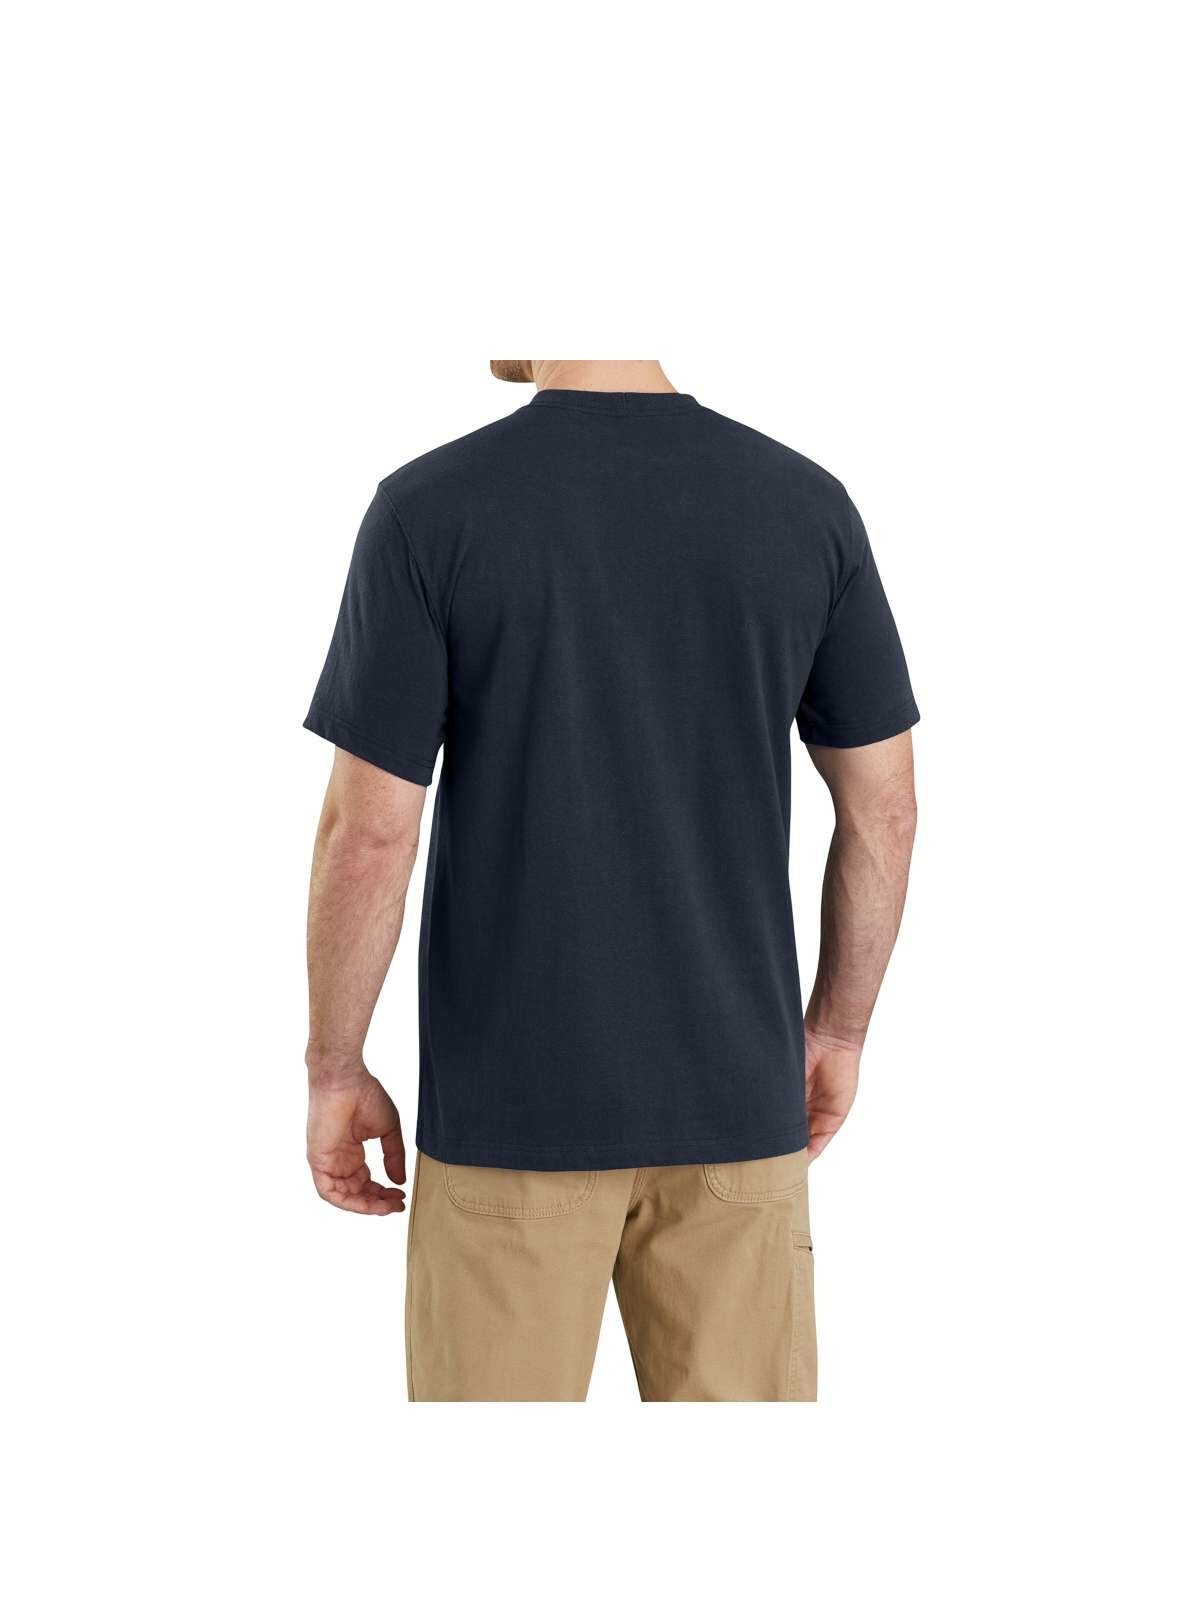 T-Shirt Carhartt schwarz Herren T-Shirt NAVY Pocket Carhartt